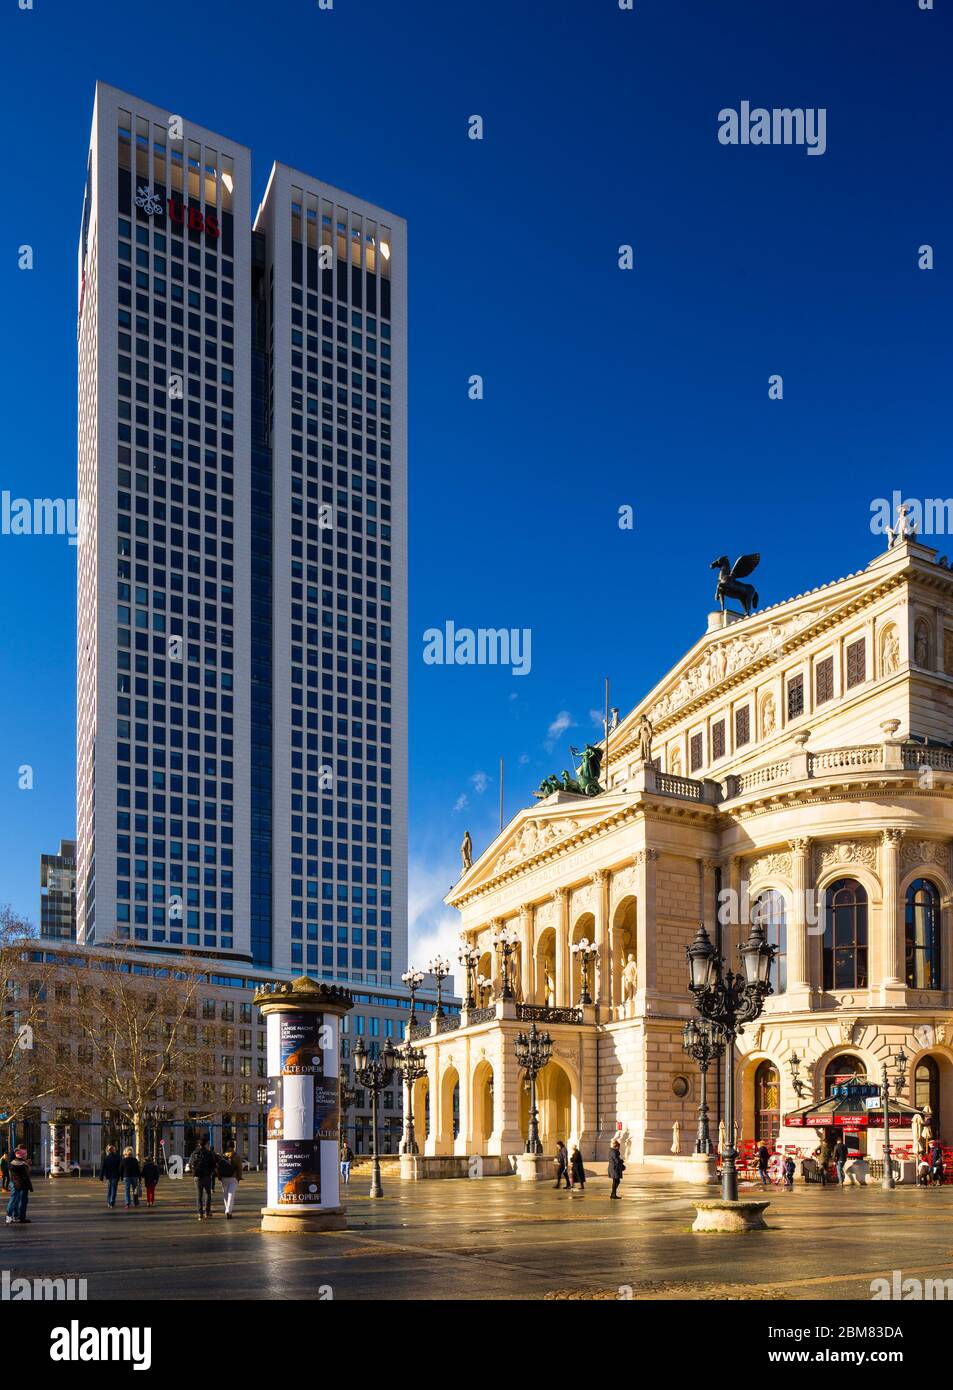 Die Alte Oper und der Opernturm am Opernplatz, Frankfurt am Main, Hessen. Der OpernTurm ist ein 43-stöckiges Hochhaus von Christoph Mäckler, das 170 m (560 ft) groß ist. Stockfoto